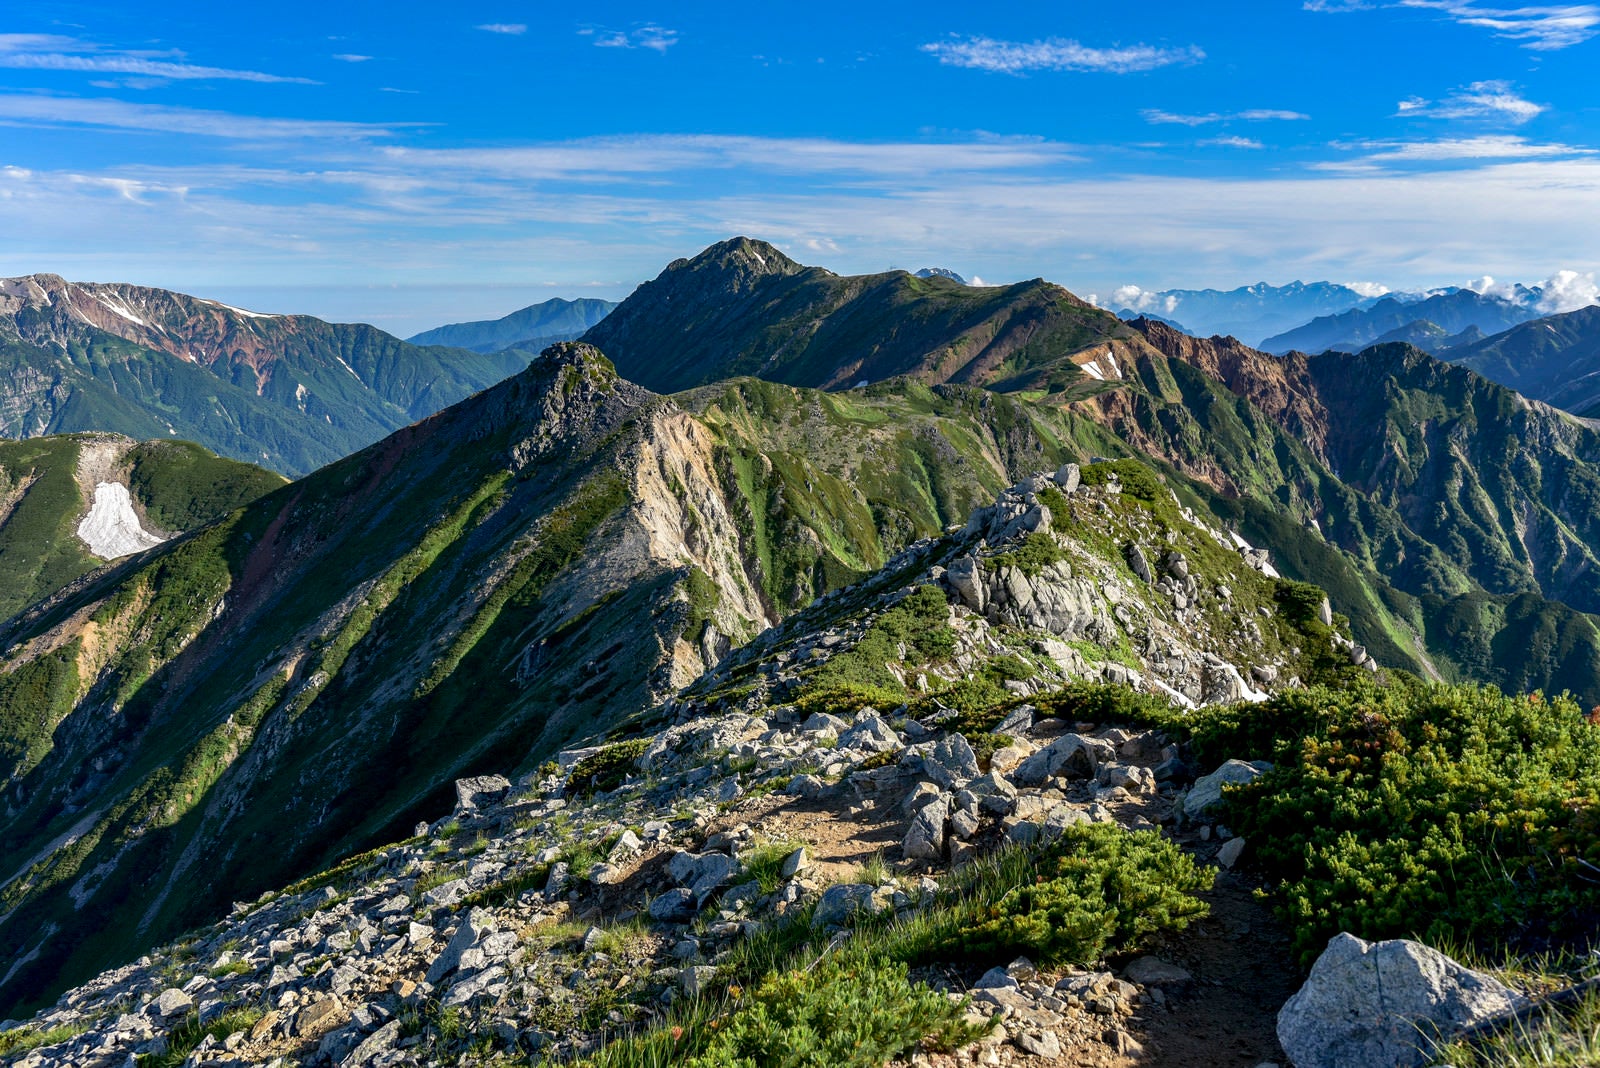 「鷲羽岳から水晶岳へとつながる稜線」の写真